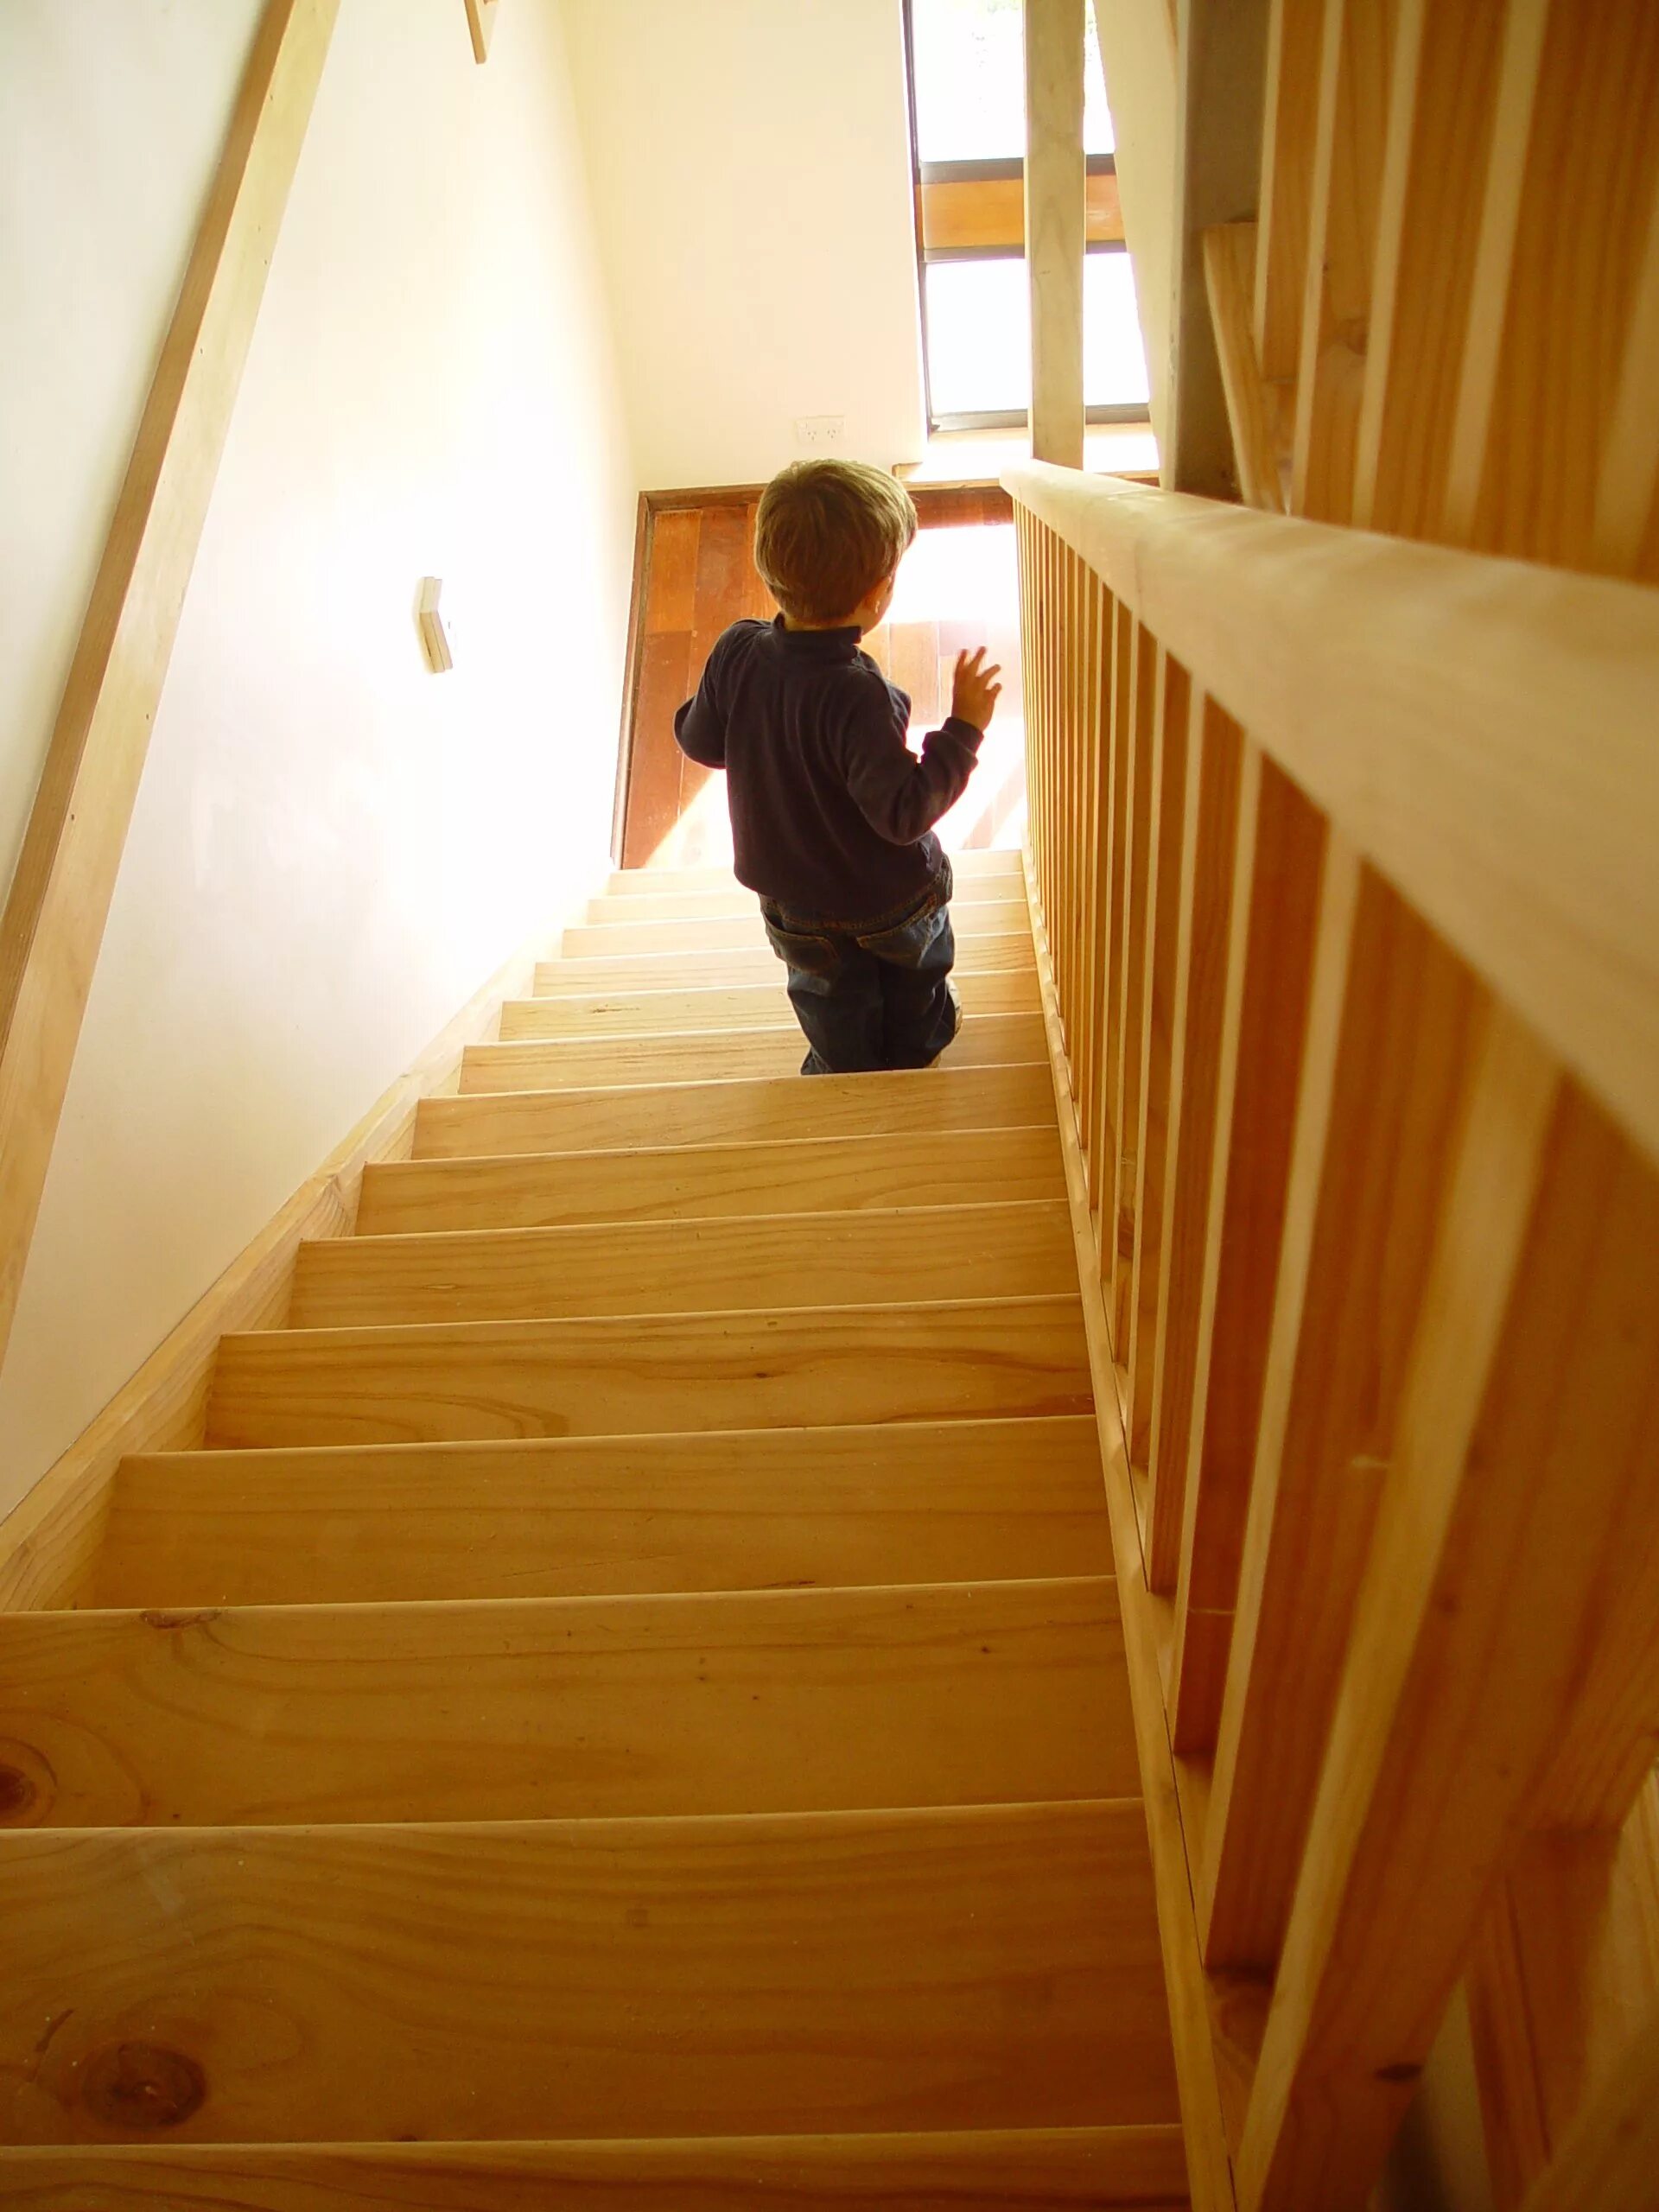 По маленькой лестнице поднялись. Лестница для детей. Лестница деревянная детская. Фотосессия на лестнице в доме. Дошкольник на лестнице.